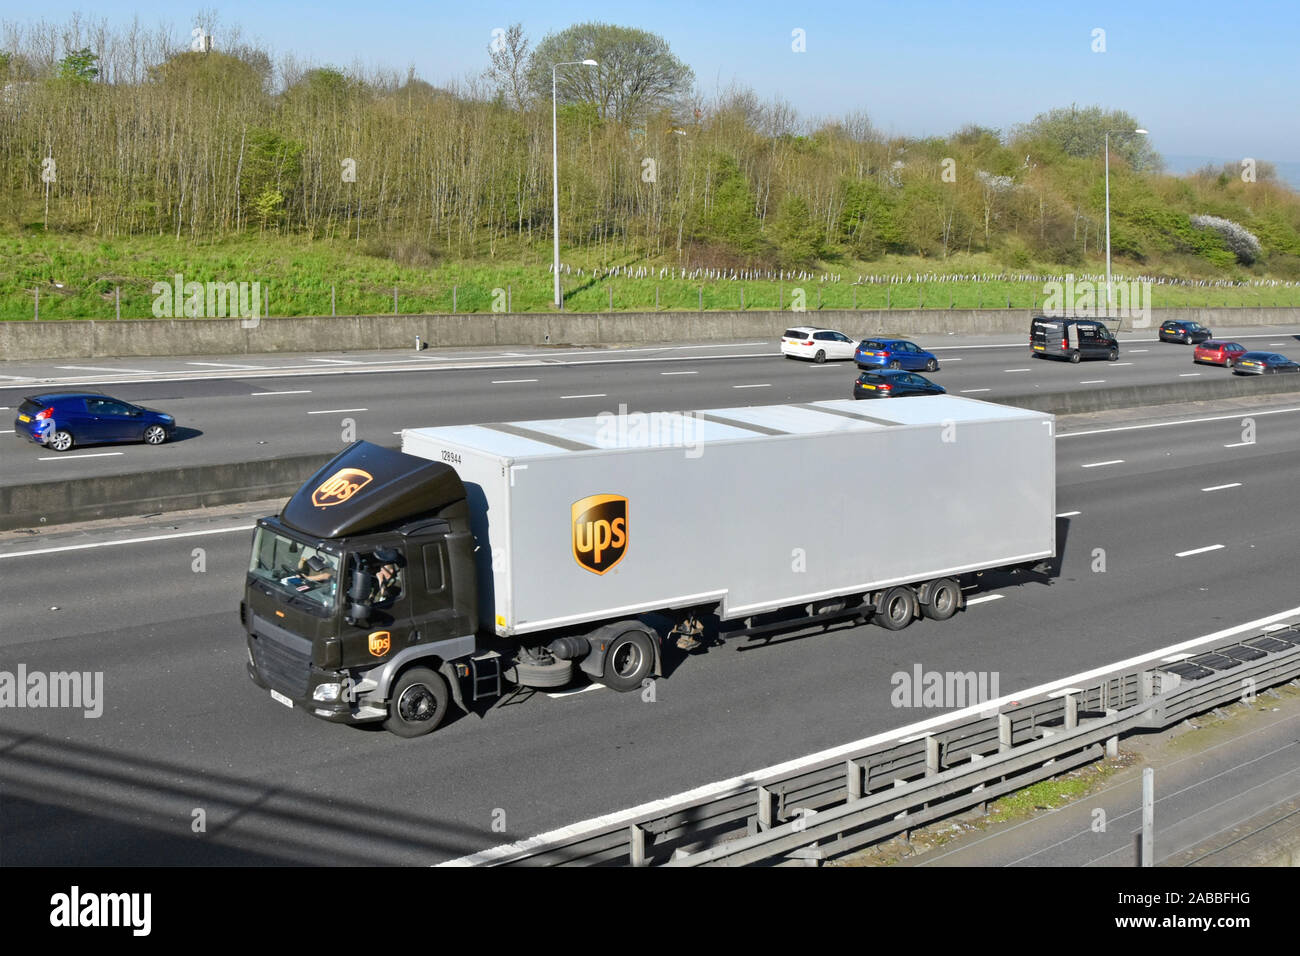 Logística de la cadena de suministro transporte de envíos de UPS United Parcel Service, el logotipo de marca de camión pesado camión articulado y lateral autopista trailer English UK Foto de stock